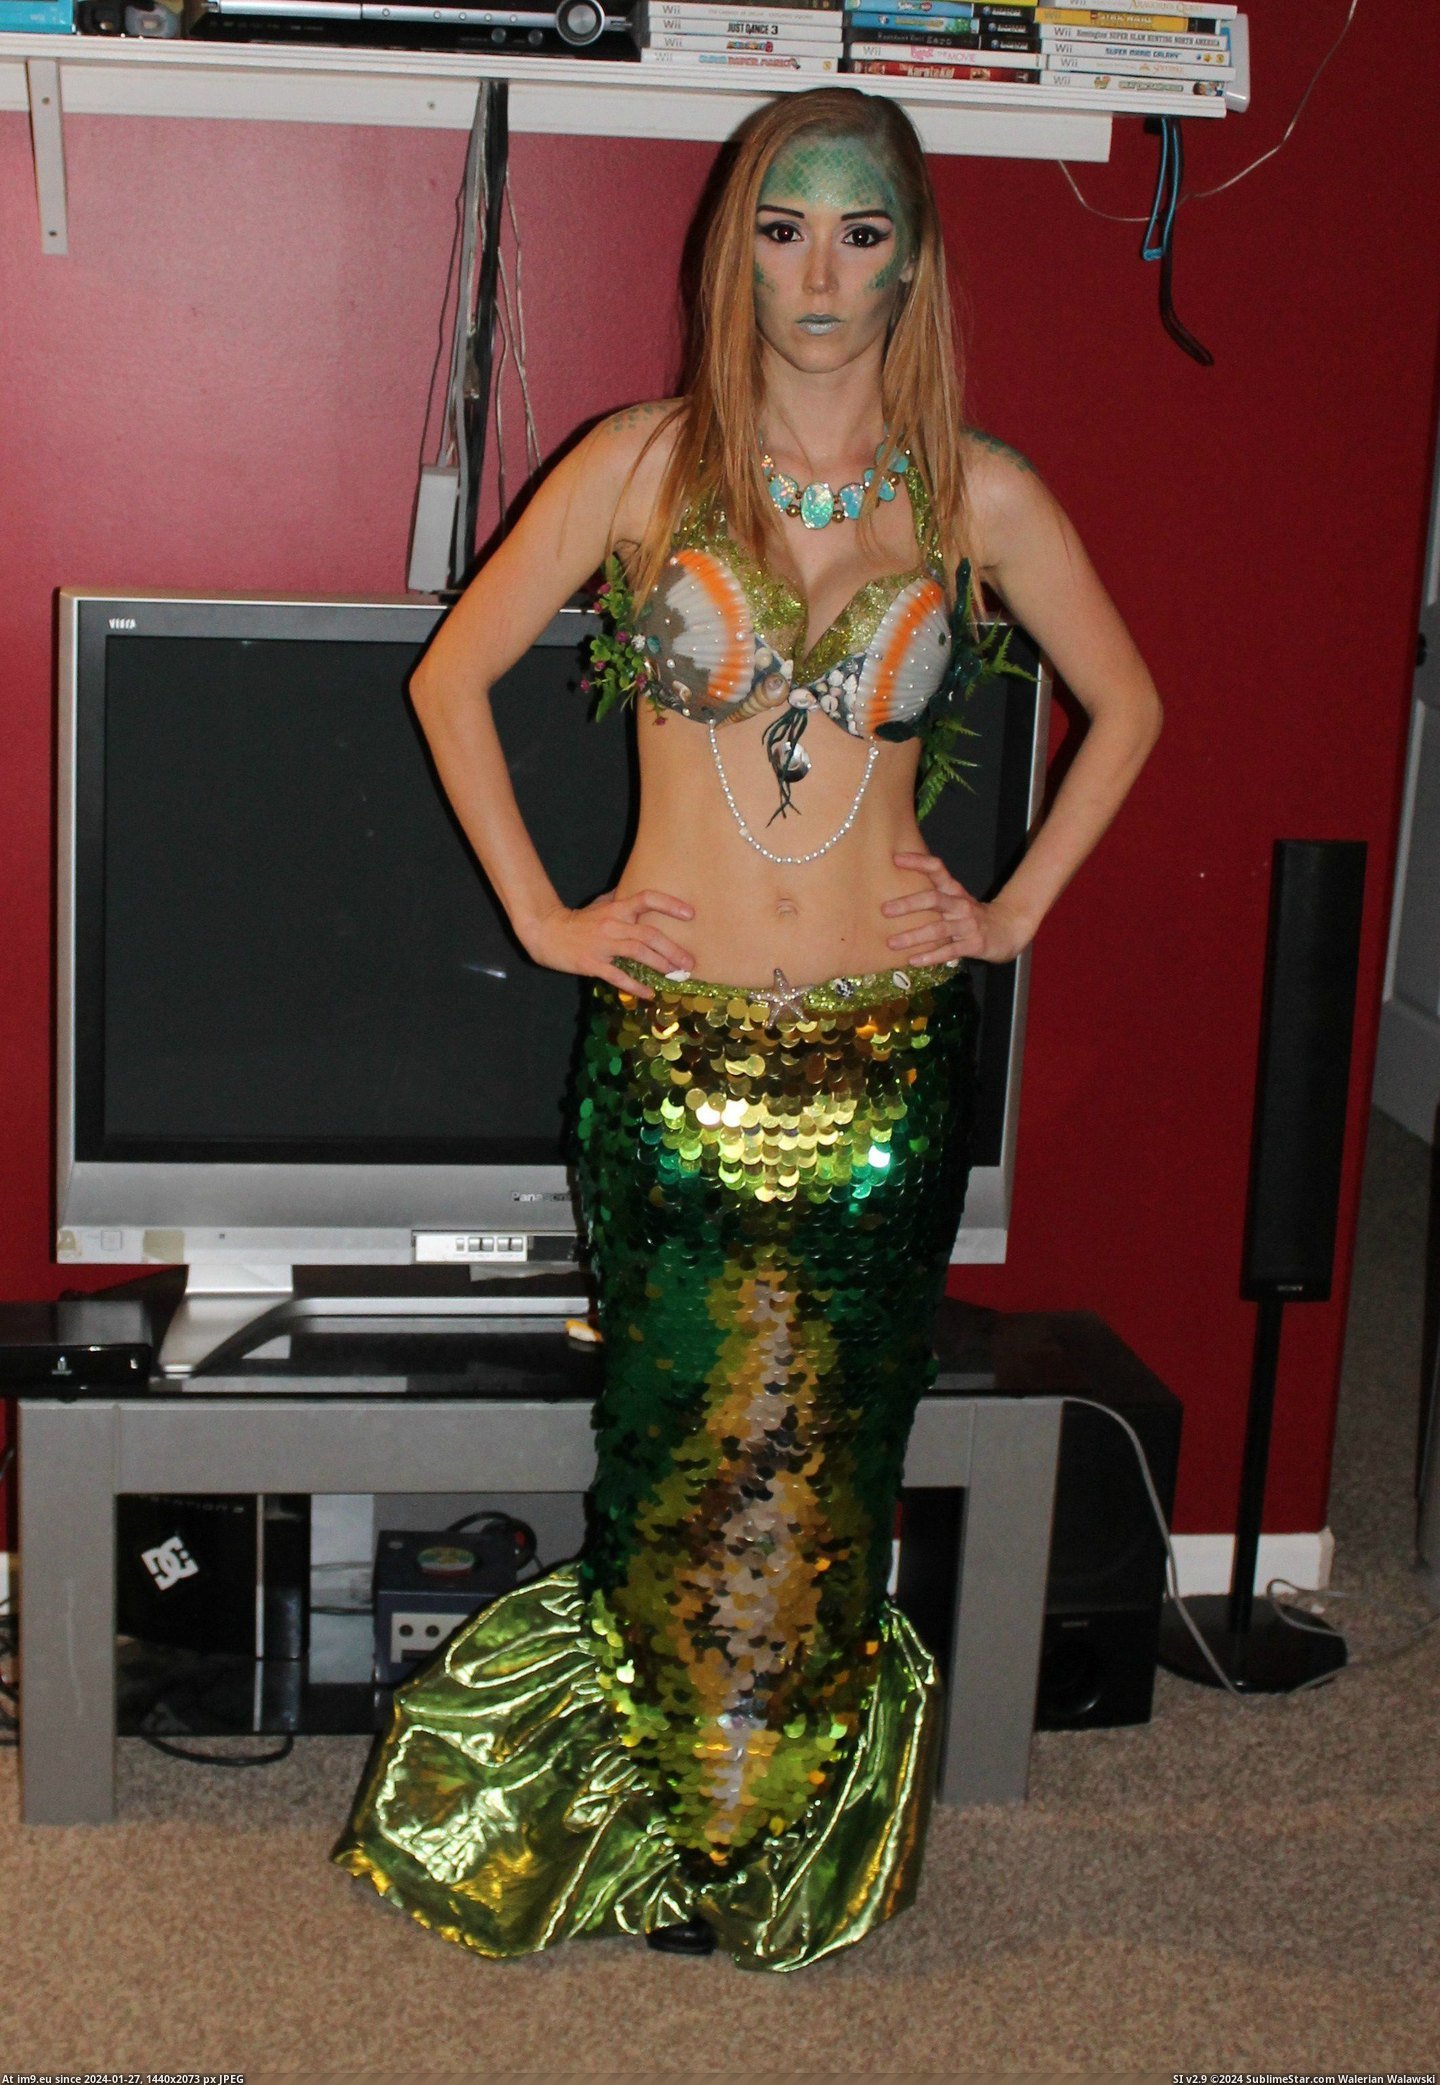 #Costume #Homemade #Mermaid [Pics] My homemade mermaid costume! 1 Pic. (Image of album My r/PICS favs))